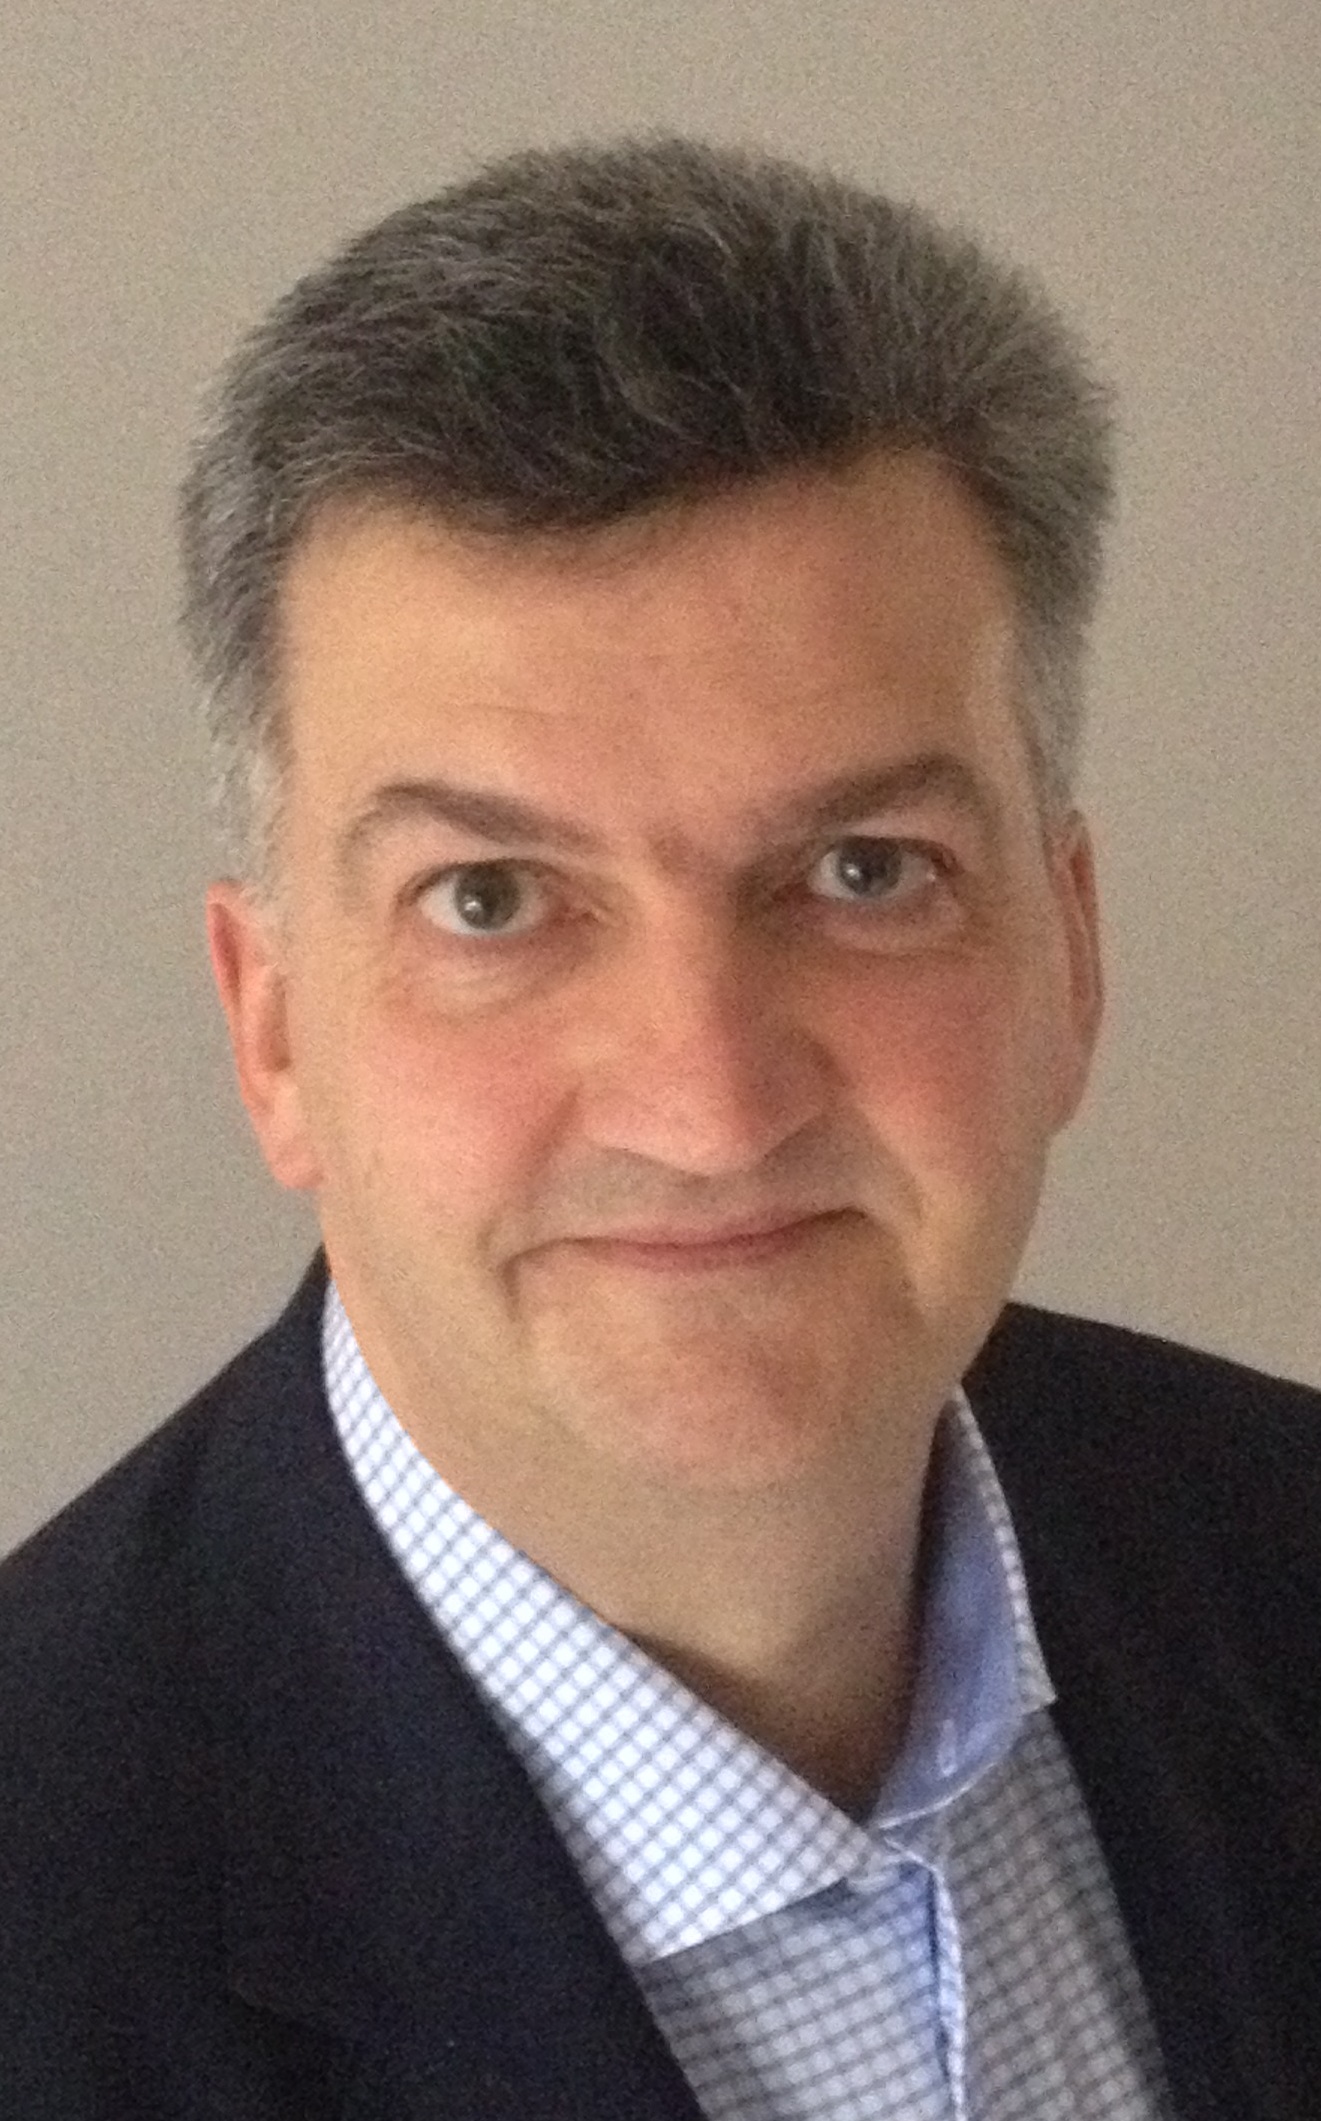 Xavier Montibert, vice president, business development, EMEA